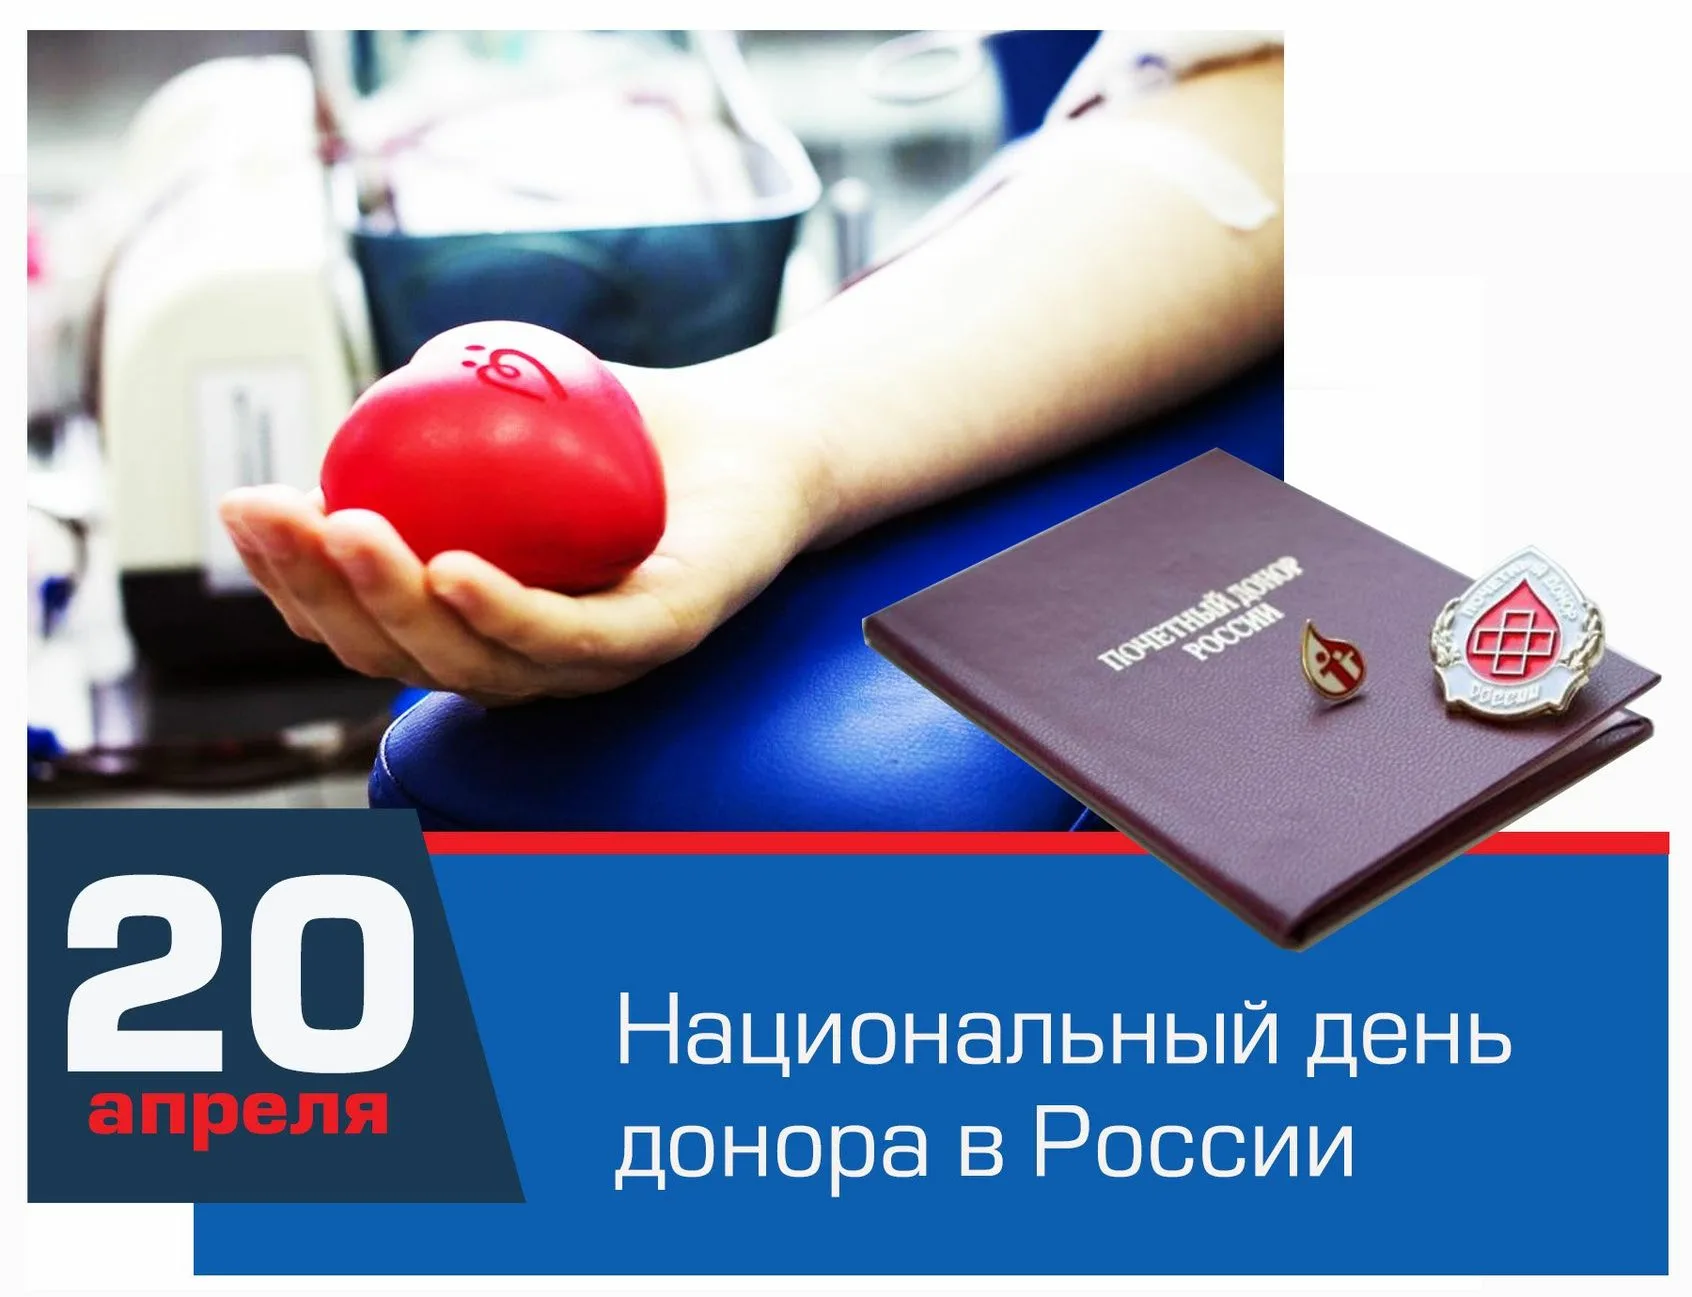 Национальный день донора. 20 Апреля день донора. Национальный день донора крови в России. День донора крови 20 апреля.